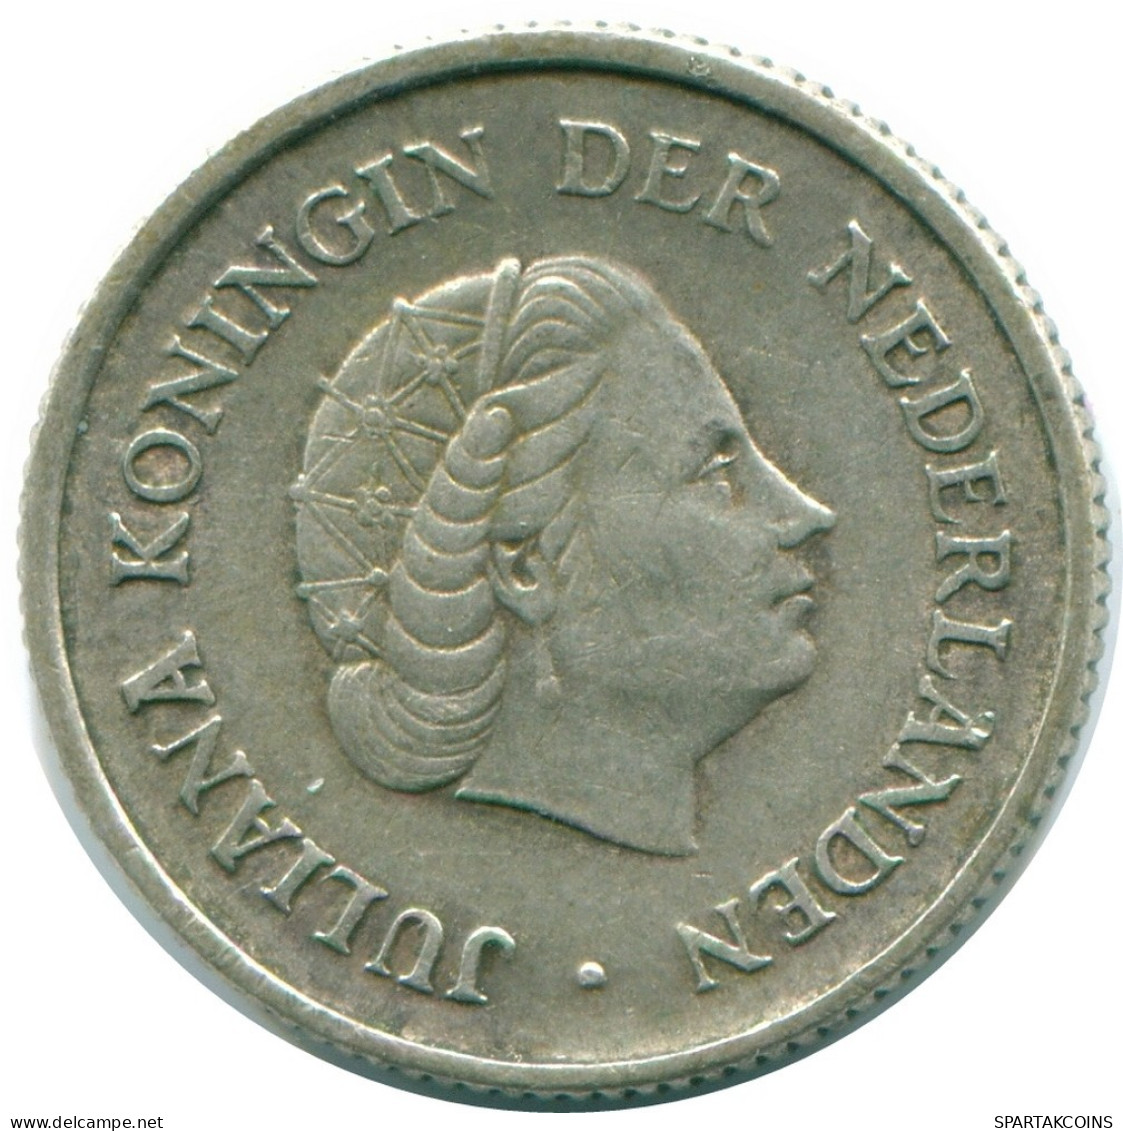 1/4 GULDEN 1965 NIEDERLÄNDISCHE ANTILLEN SILBER Koloniale Münze #NL11374.4.D.A - Antilles Néerlandaises